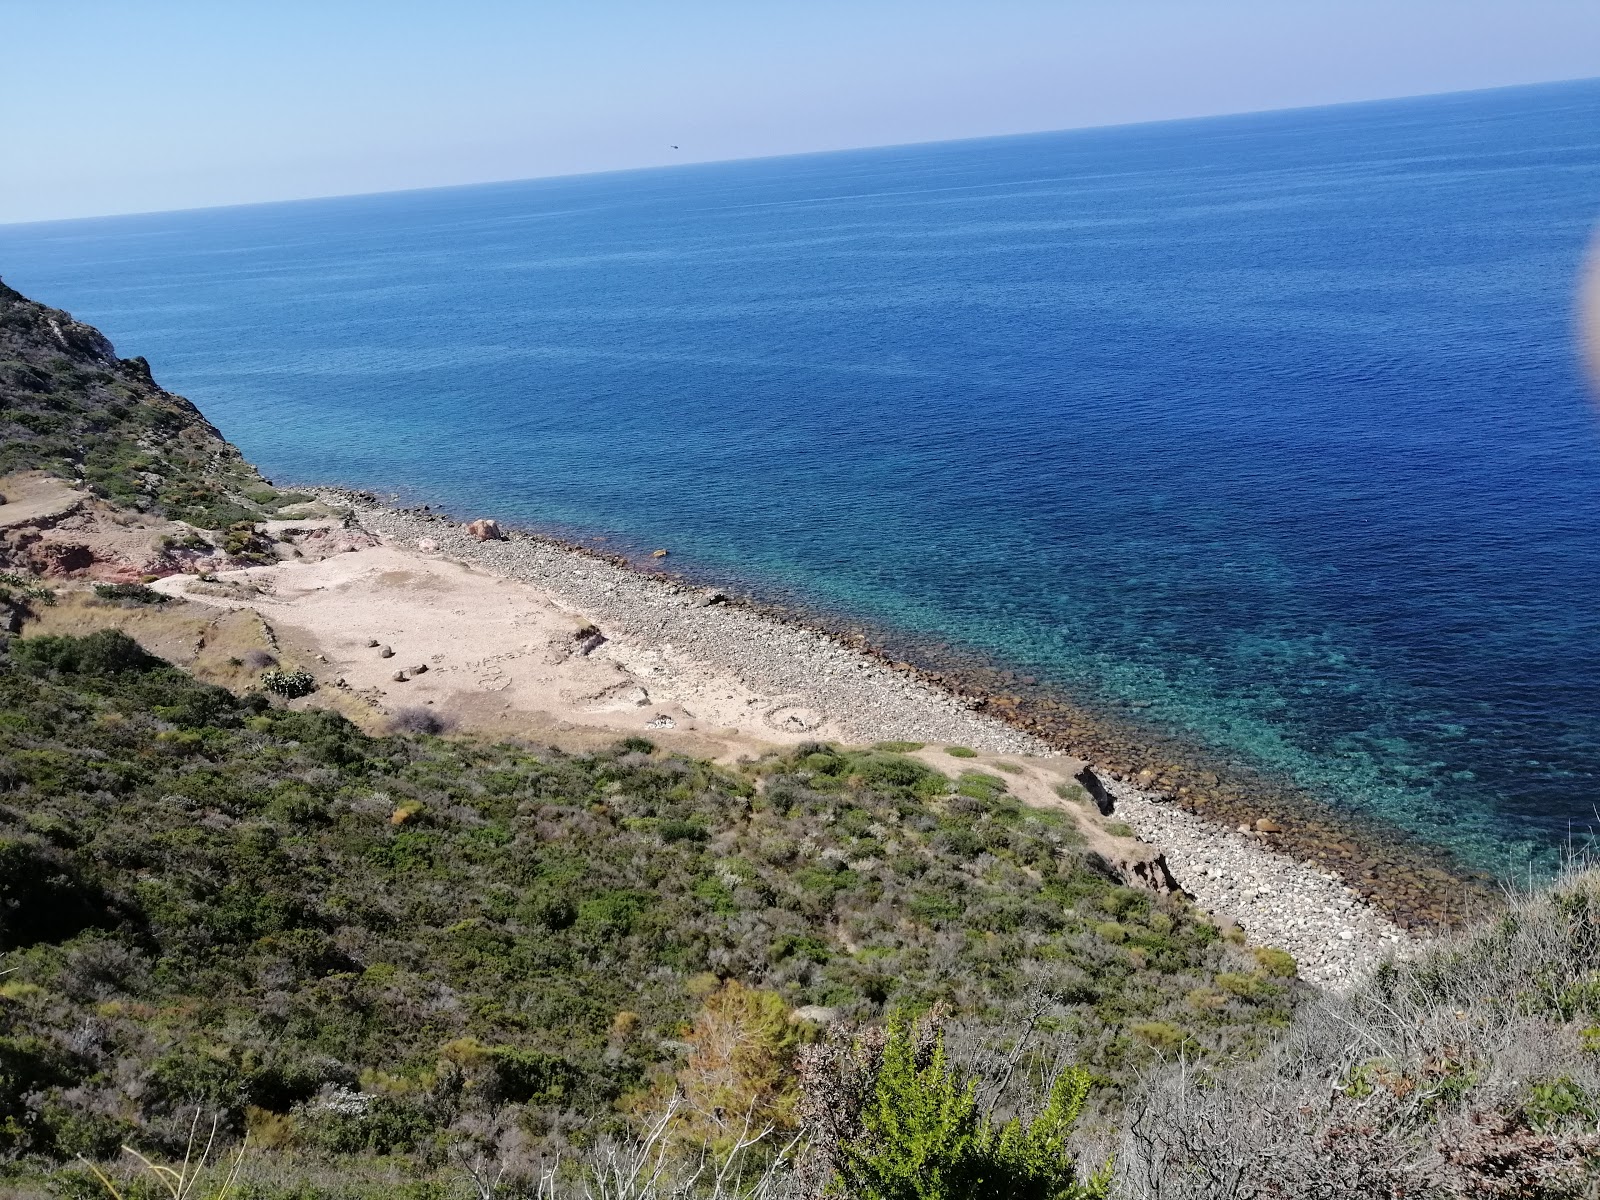 Photo of Spiaggia della Calcara with rocks cover surface